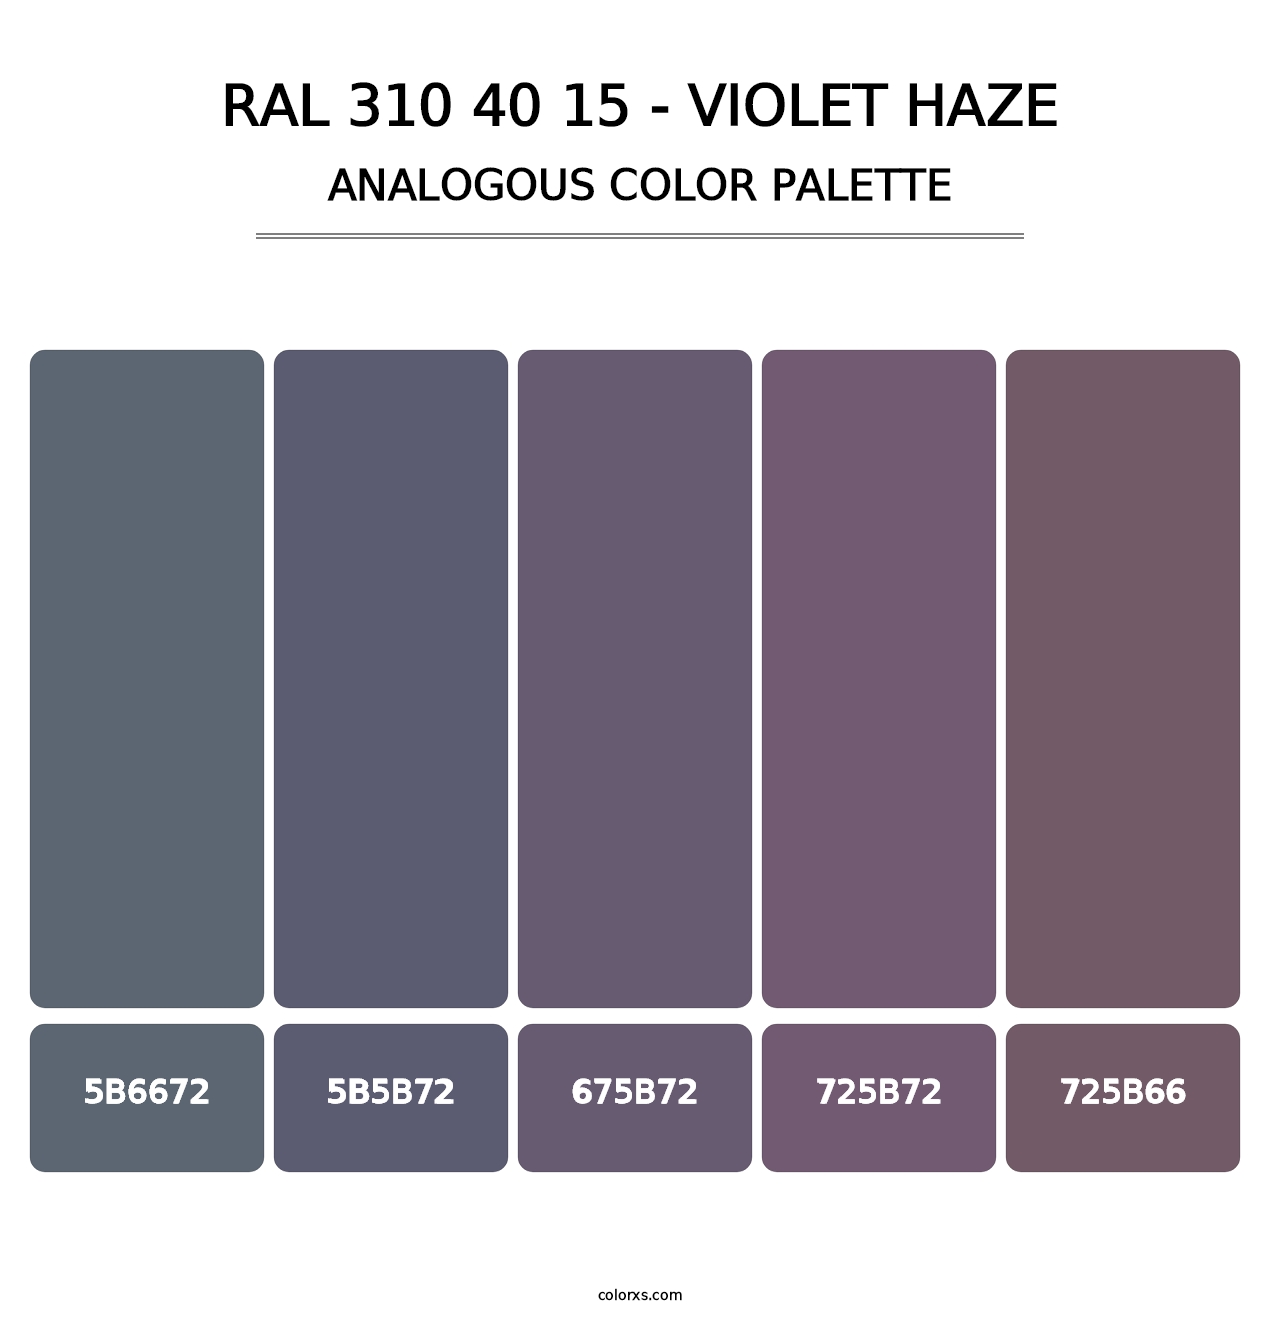 RAL 310 40 15 - Violet Haze - Analogous Color Palette